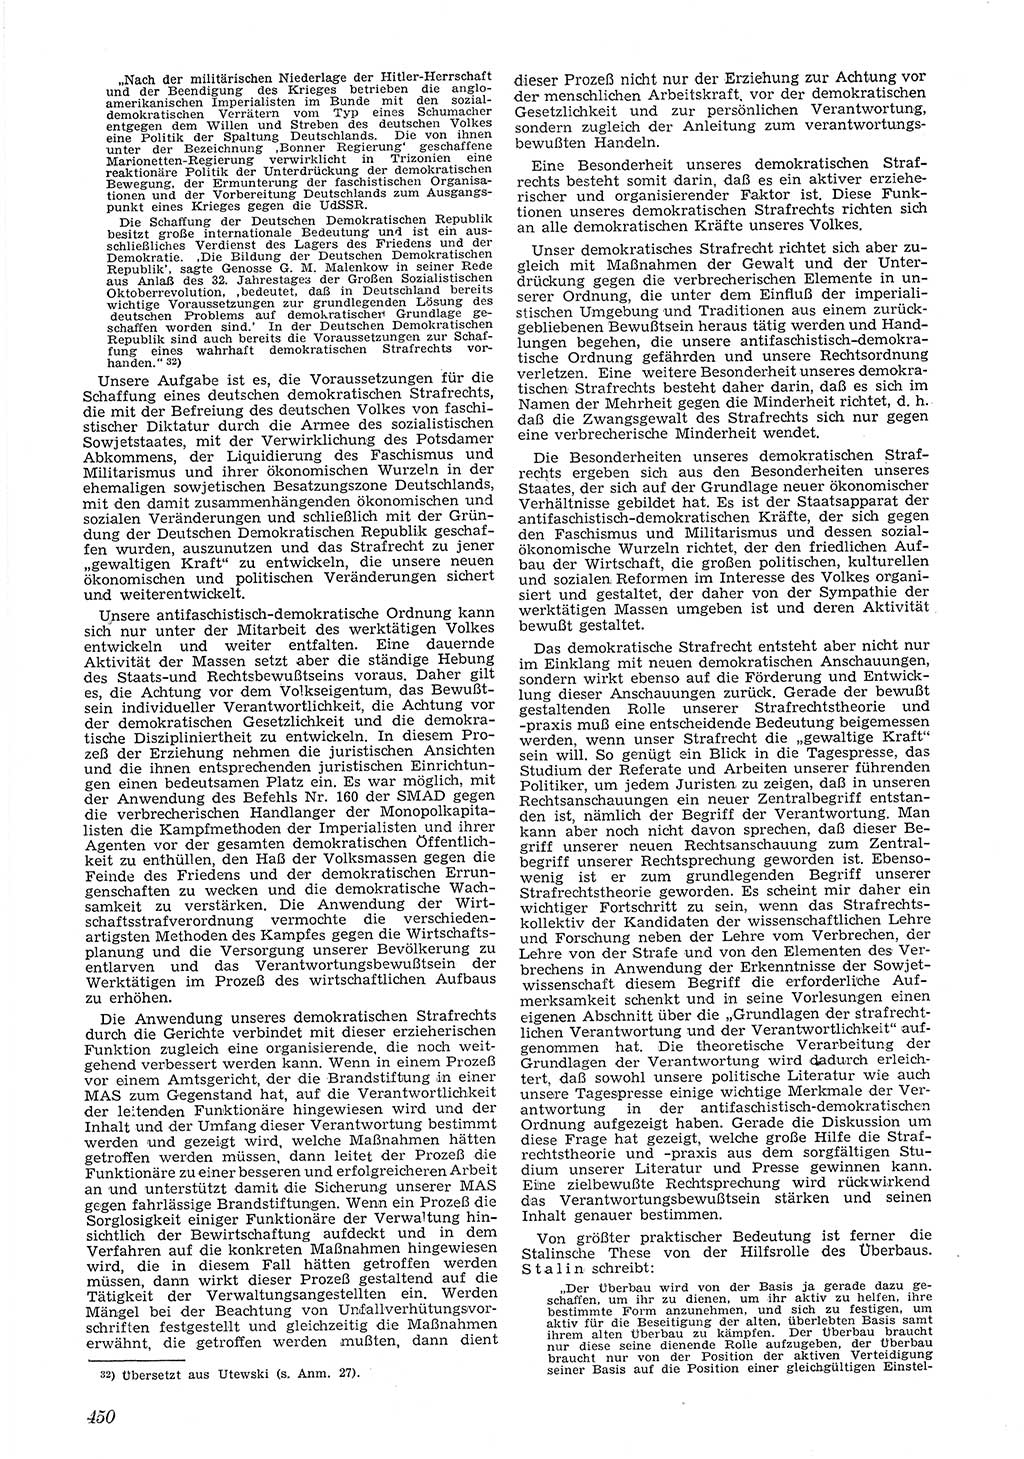 Neue Justiz (NJ), Zeitschrift für Recht und Rechtswissenschaft [Deutsche Demokratische Republik (DDR)], 5. Jahrgang 1951, Seite 450 (NJ DDR 1951, S. 450)